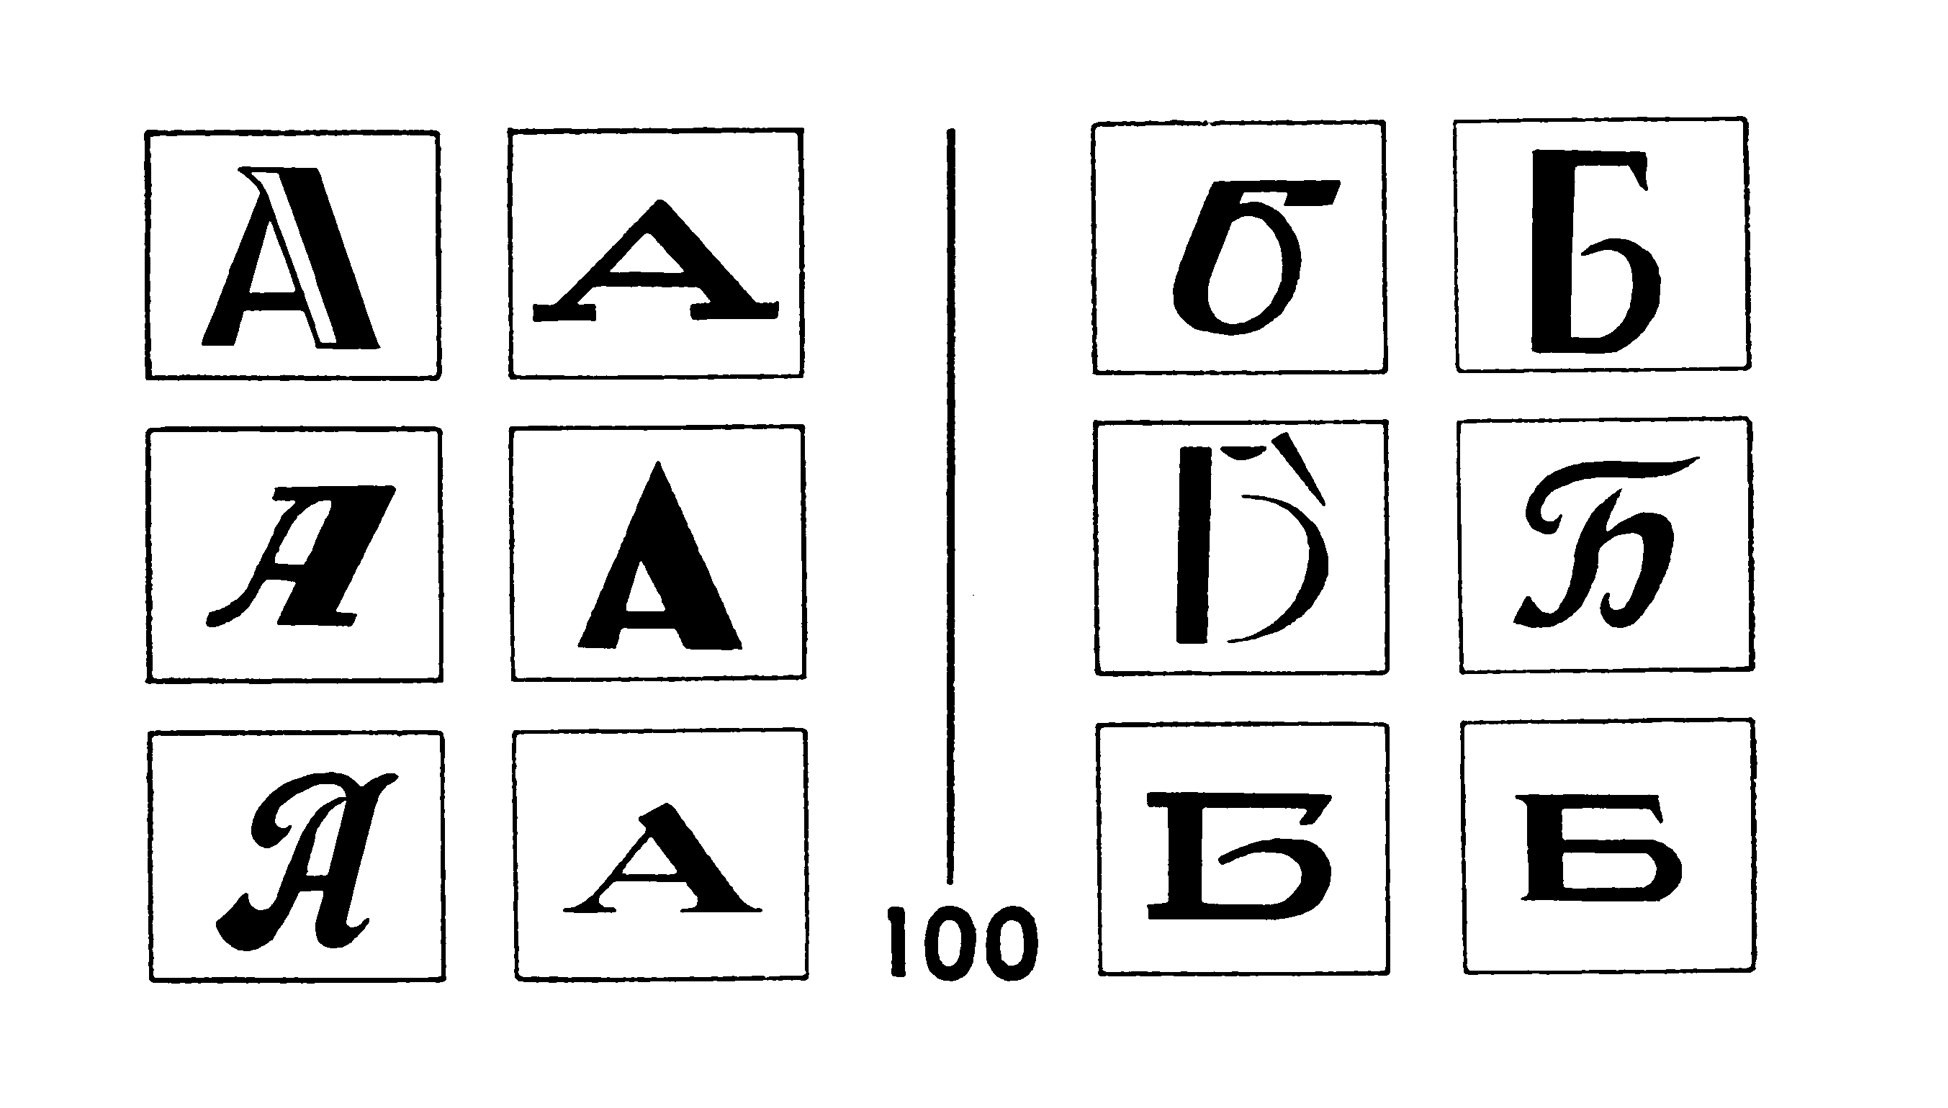 Planche de l’appendice de l’ouvrage Pattern Recognition de Bongard. No 100 : la lettre A / la lettre Б